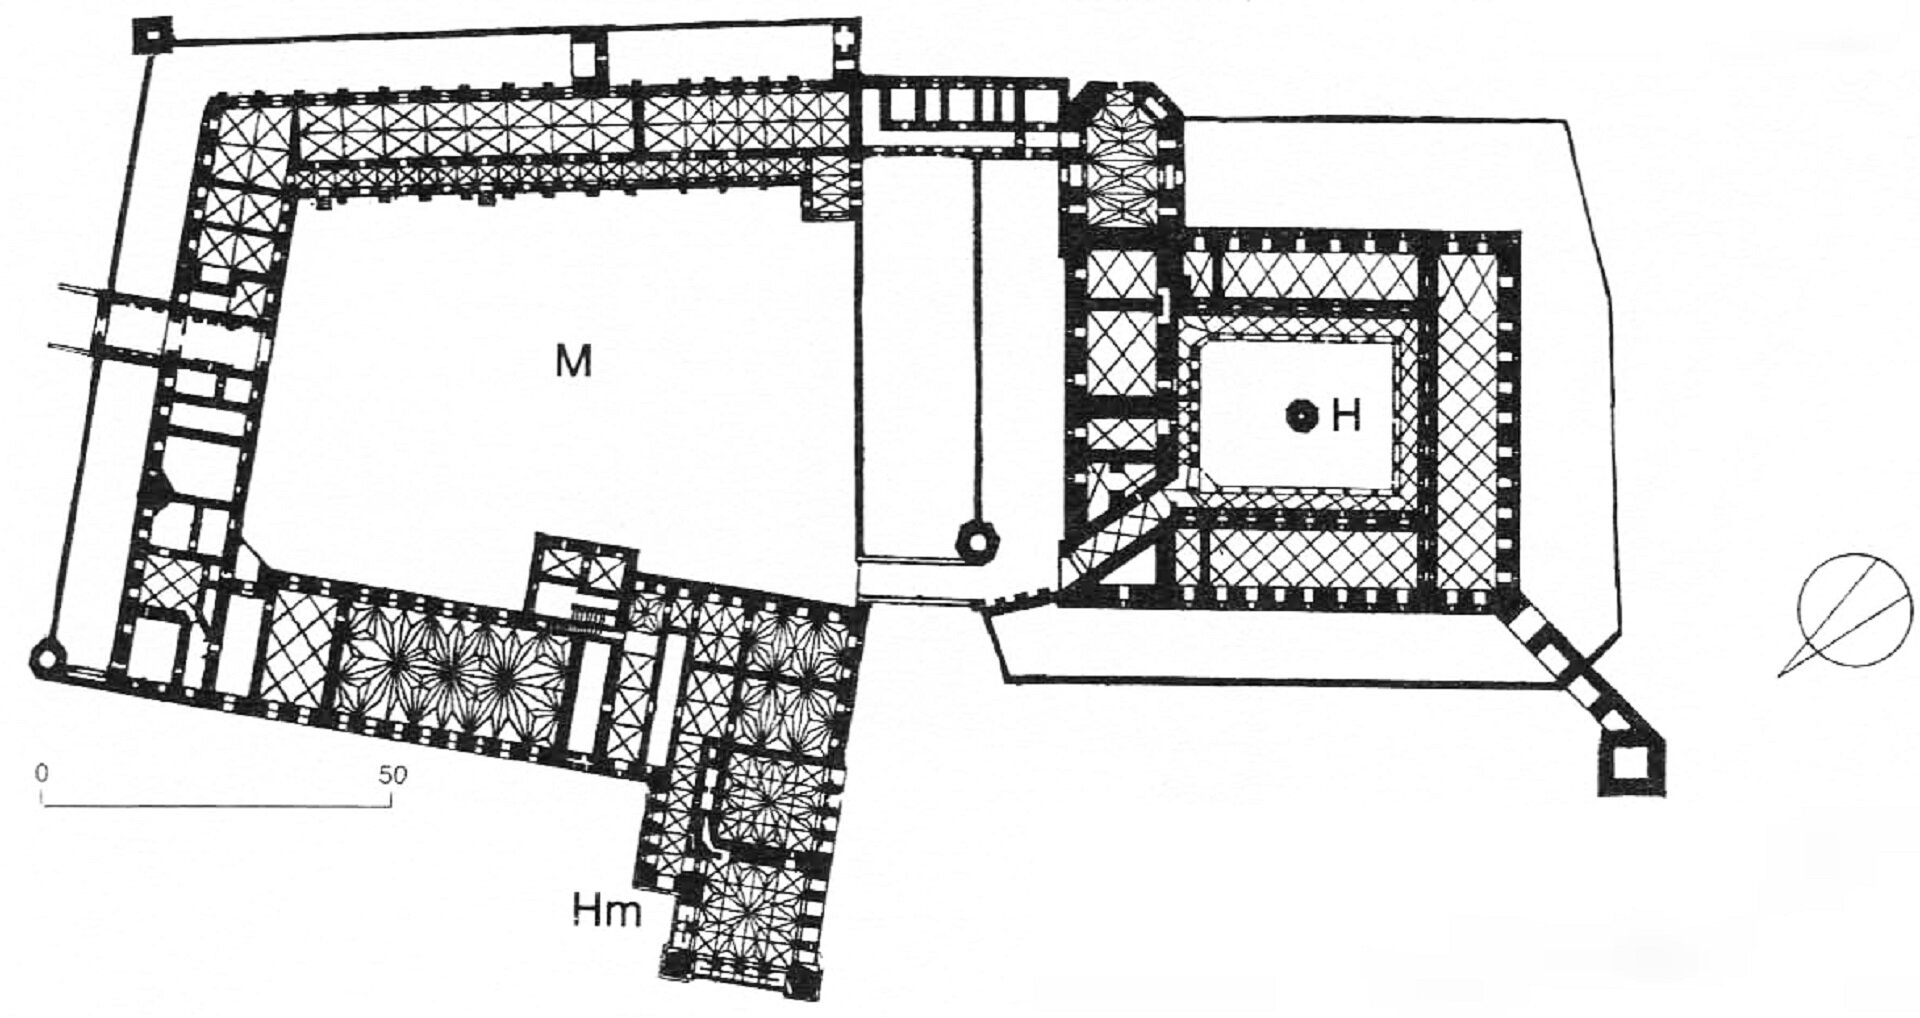 Ilustracja o kształcie poziomego prostokąta przedstawia plan Zamku krzyżackiego w Malborku. Widoczne są kształtu murów, zaznaczona po lewej stronie brama wjazdowa oraz zarysowane mury z podziałami. Wydzielone są także wszystkie obiekty zabudowy. 